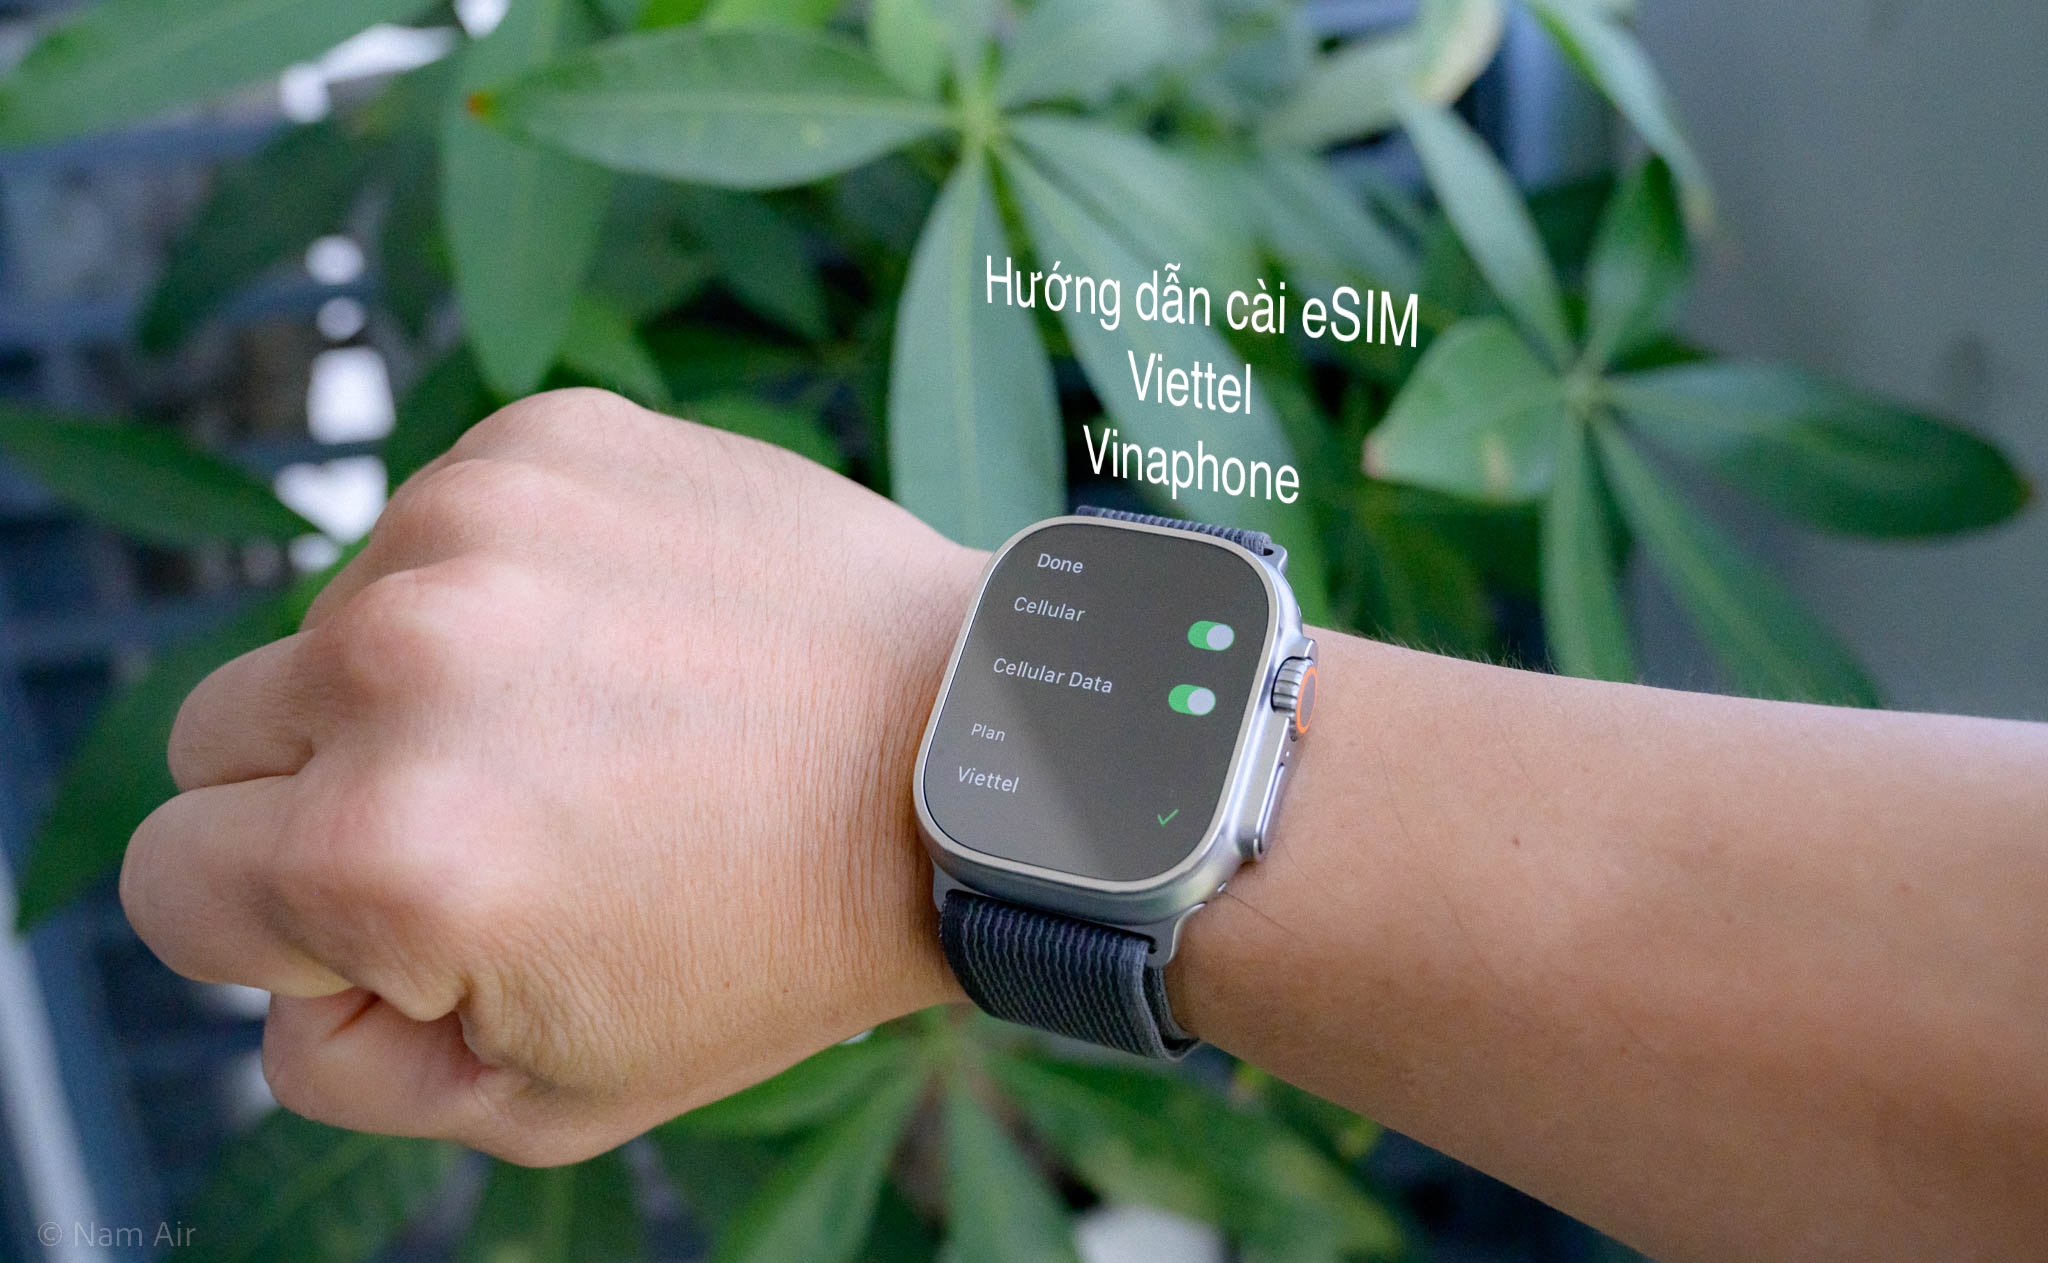 Hướng dẫn cơ bản cho người dùng Viettel, Vinaphone kích hoạt eSIM trên Apple Watch